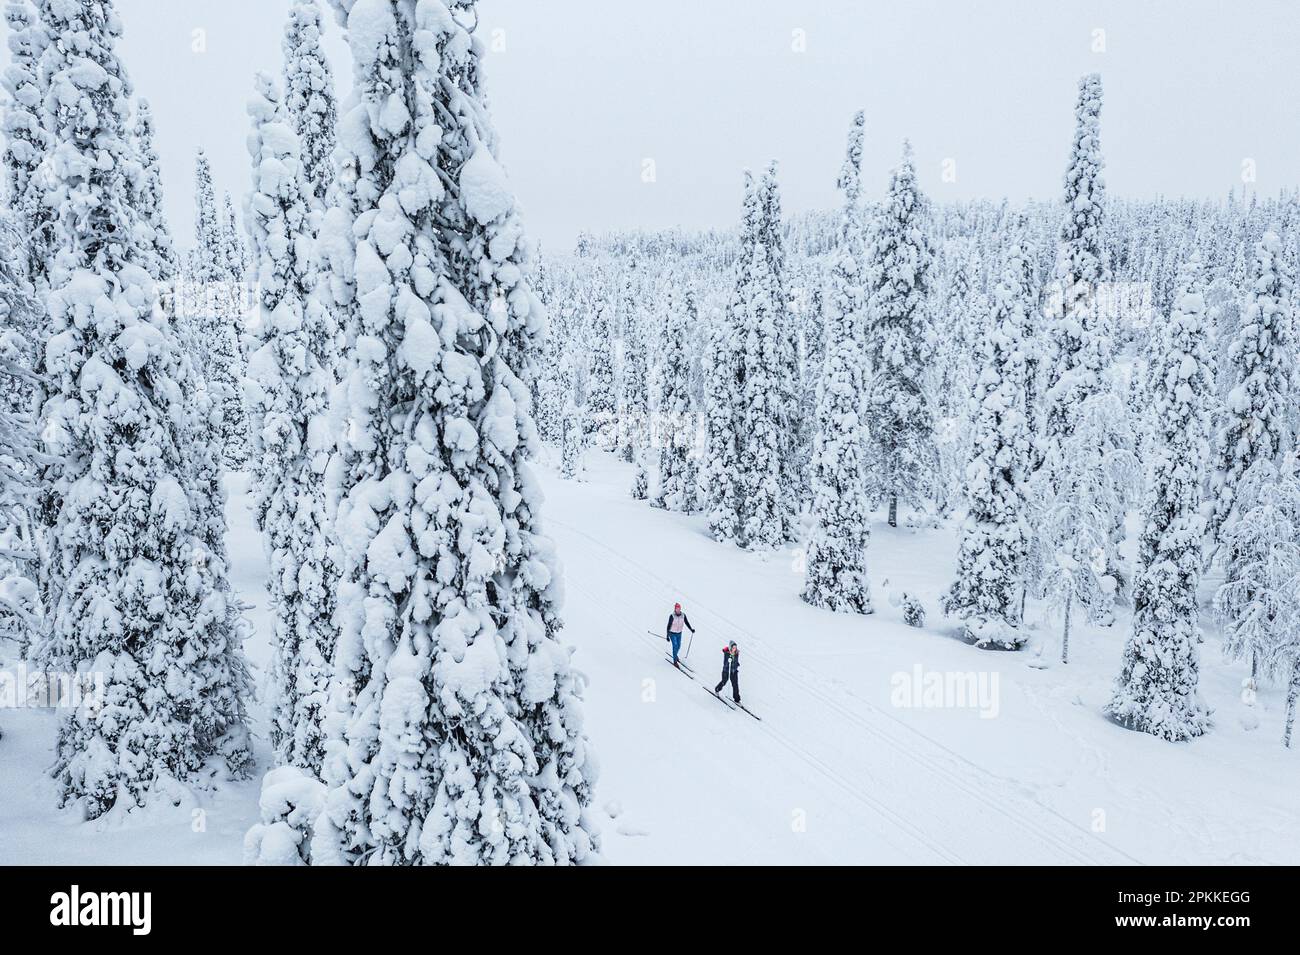 Dos personas esquí de fondo en el bosque nevado, vista aérea, Laponia, Finlandia, Europa Foto de stock